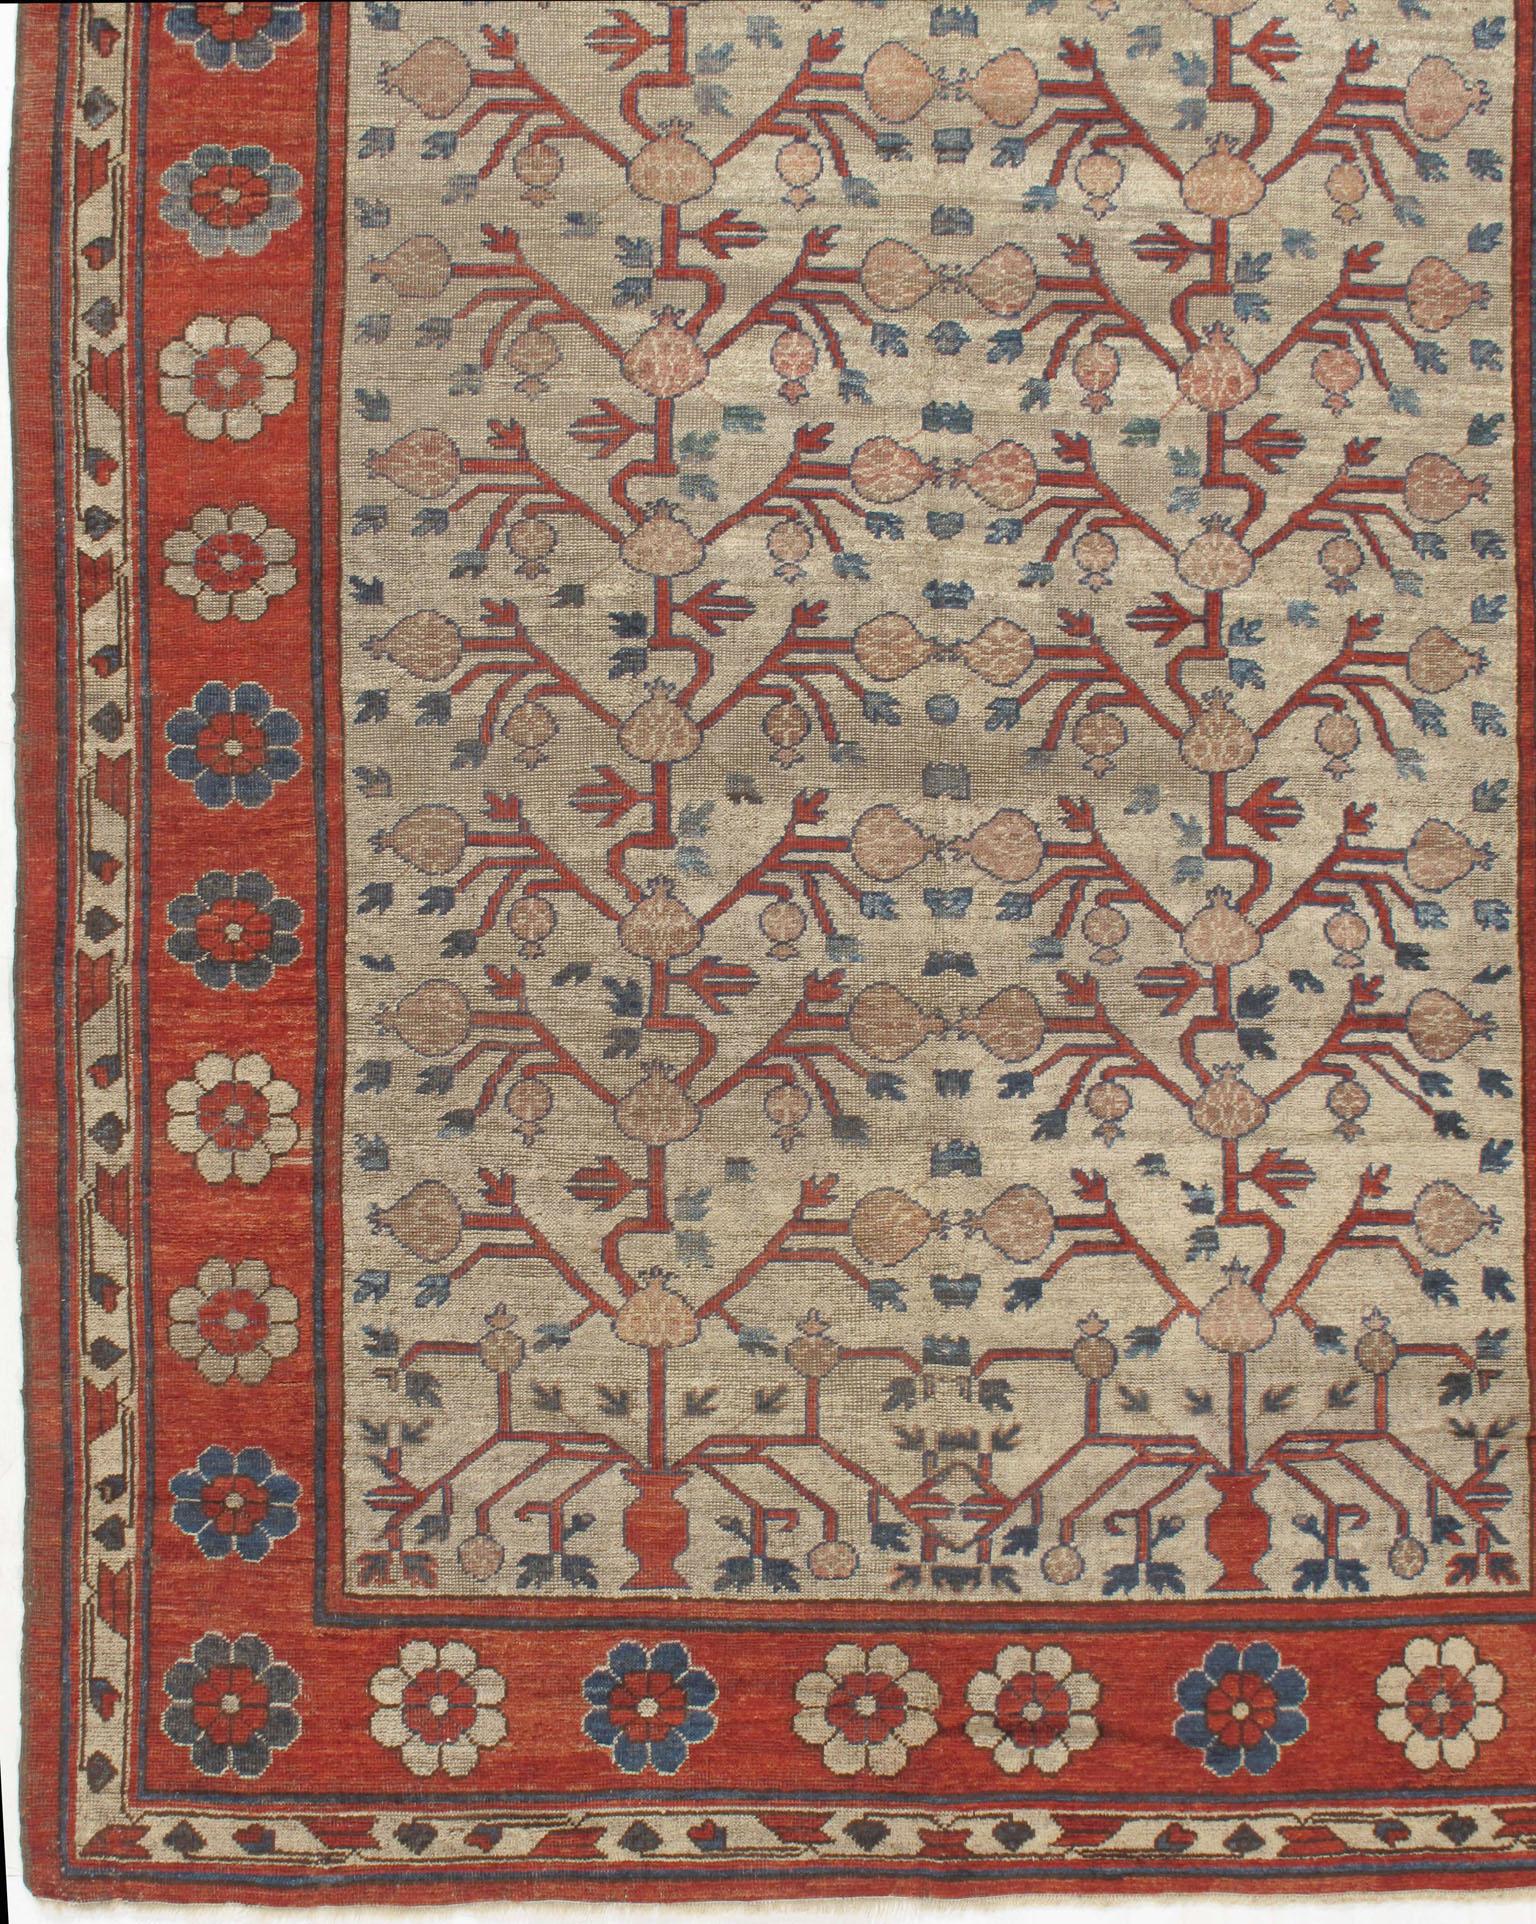 Ancien tapis Khotan Samarkand, 6'3 x 12'3. Ce magnifique tapis présente un champ ivoire orné d'un motif floral. Le tapis est doté d'un velours ras qui ajoute à la patine et lui confère cet aspect étonnant qui s'accorde aussi bien avec les styles